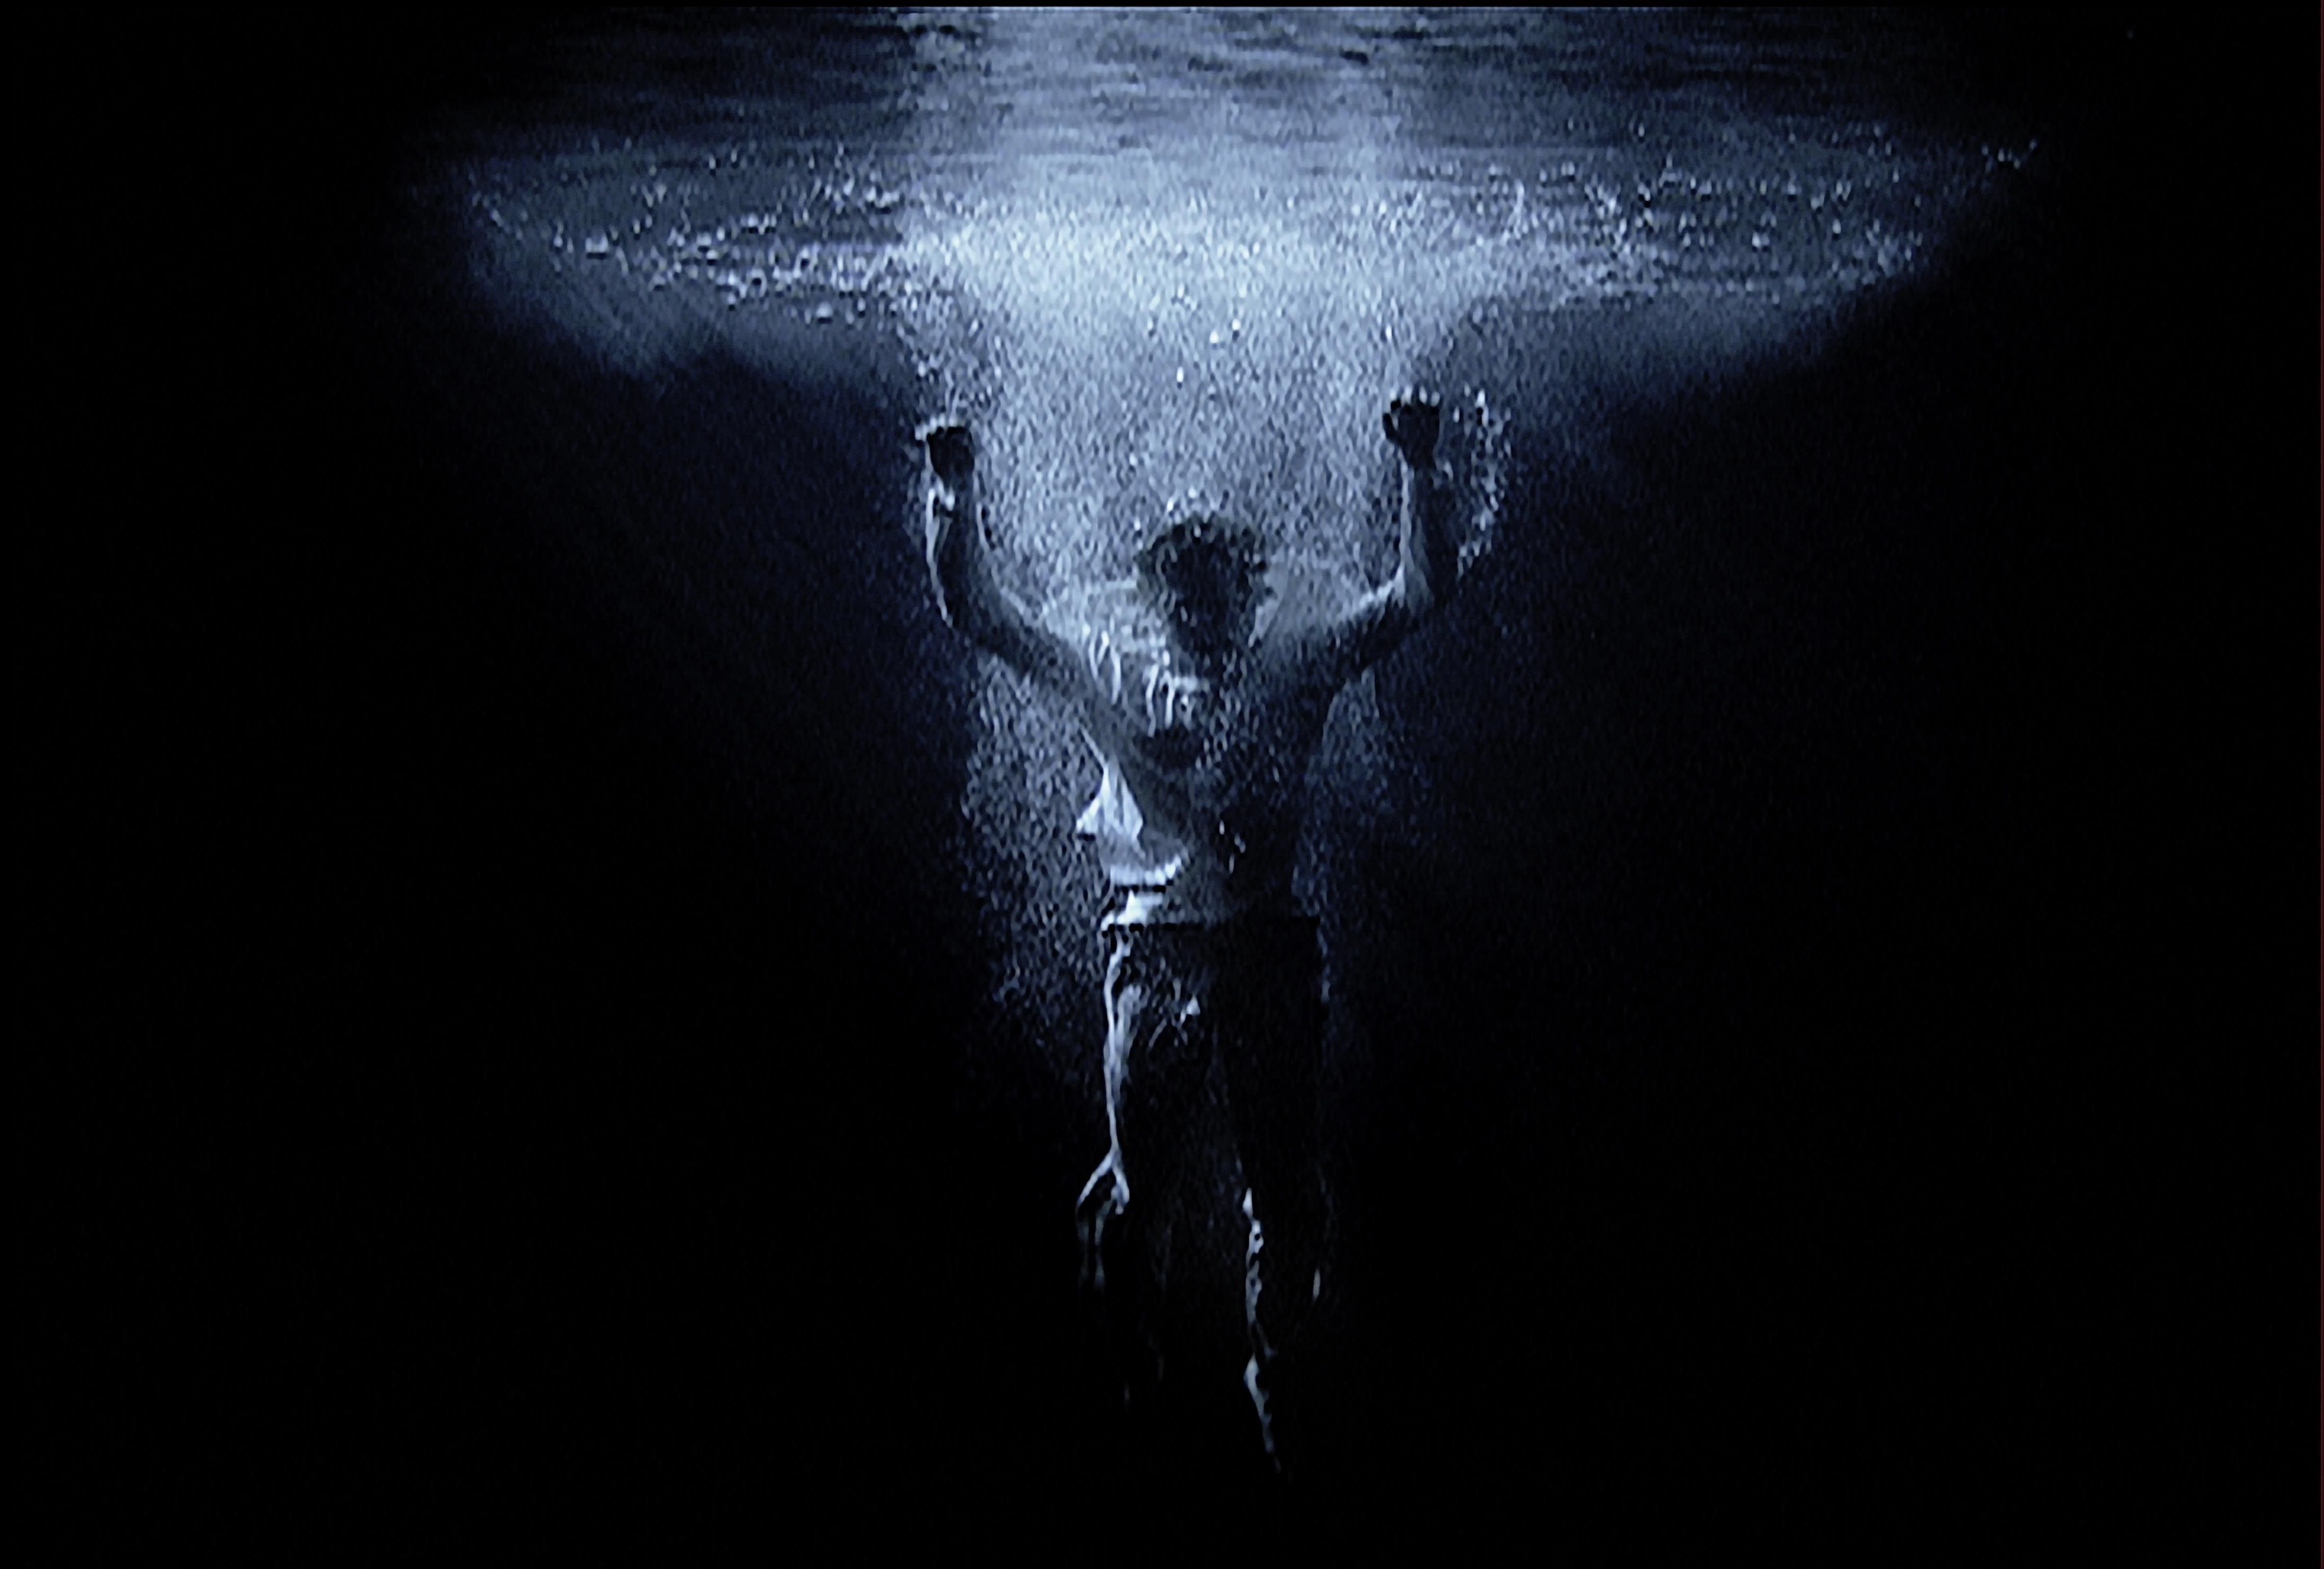 Into the water below. Билл Виола. Билл Виола видеоарт человек. Тонущий человек под водой. Человек тонущий во тьме.